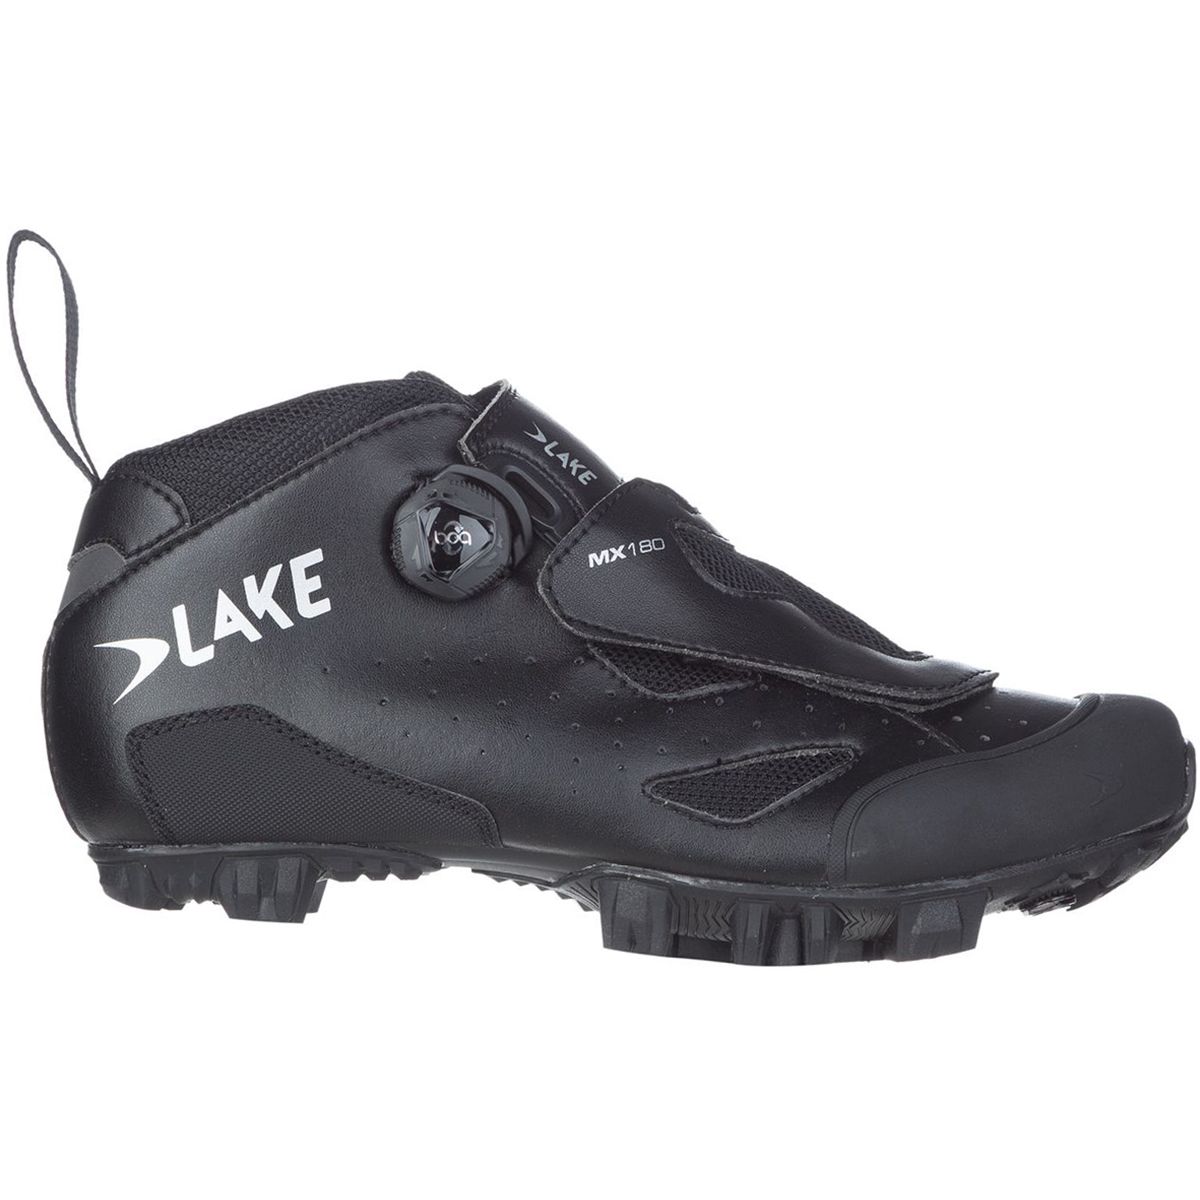 Lake MX180 Cycling Shoe Men's